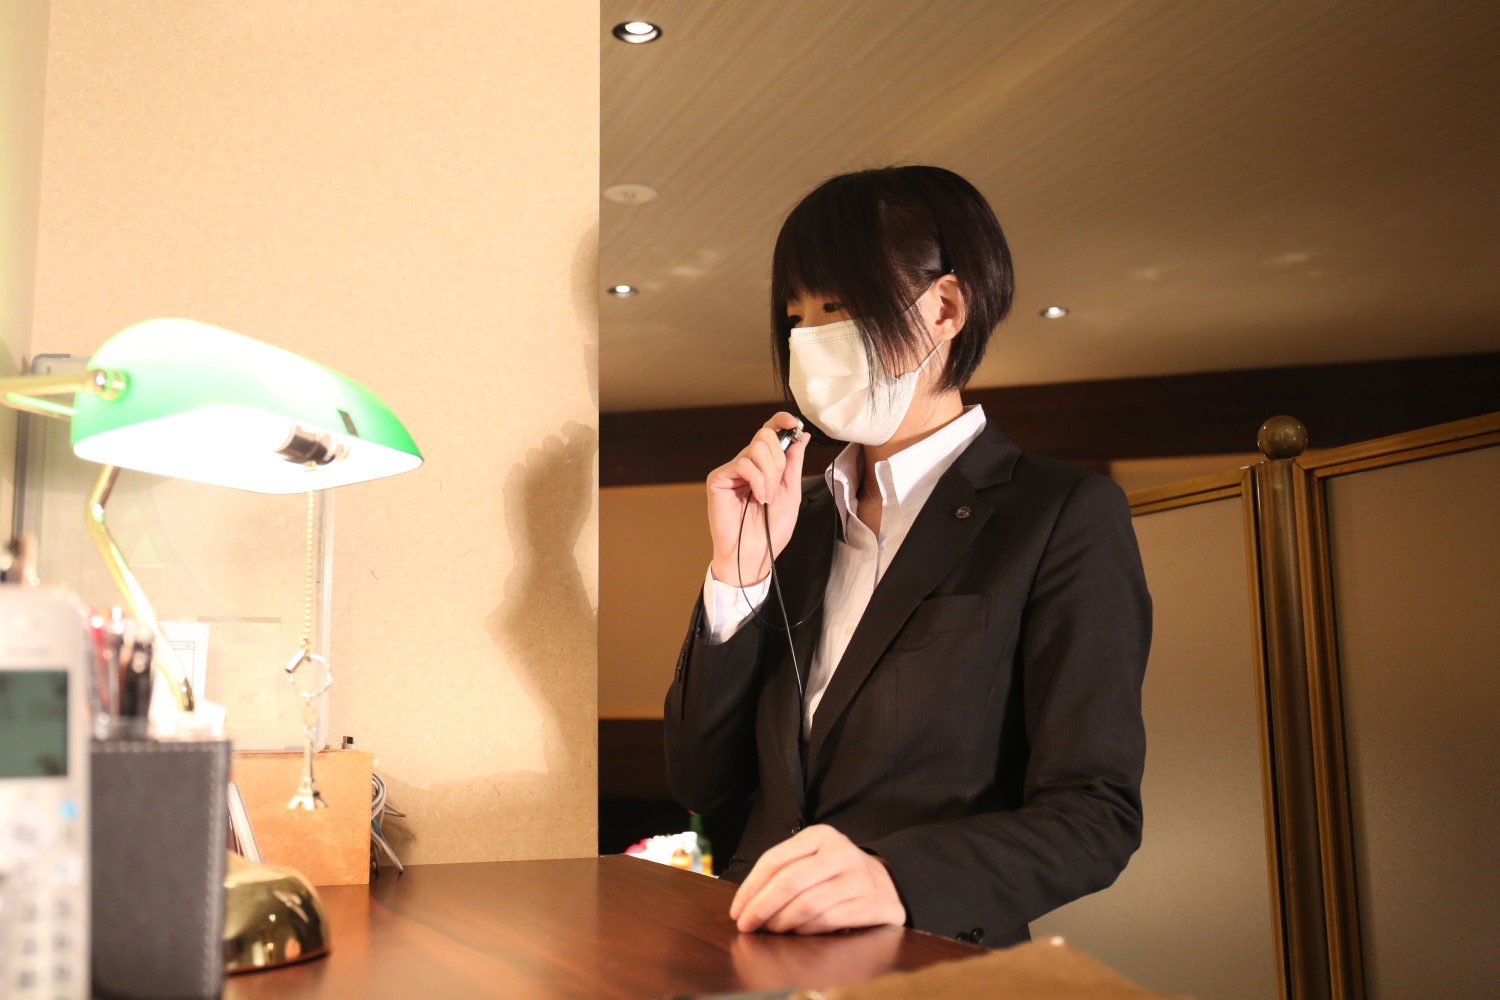 竹ノ塚で一番の老舗キャバクラ高級店ルパン乃小屋は、従業員・キャストのマスク着用をしています